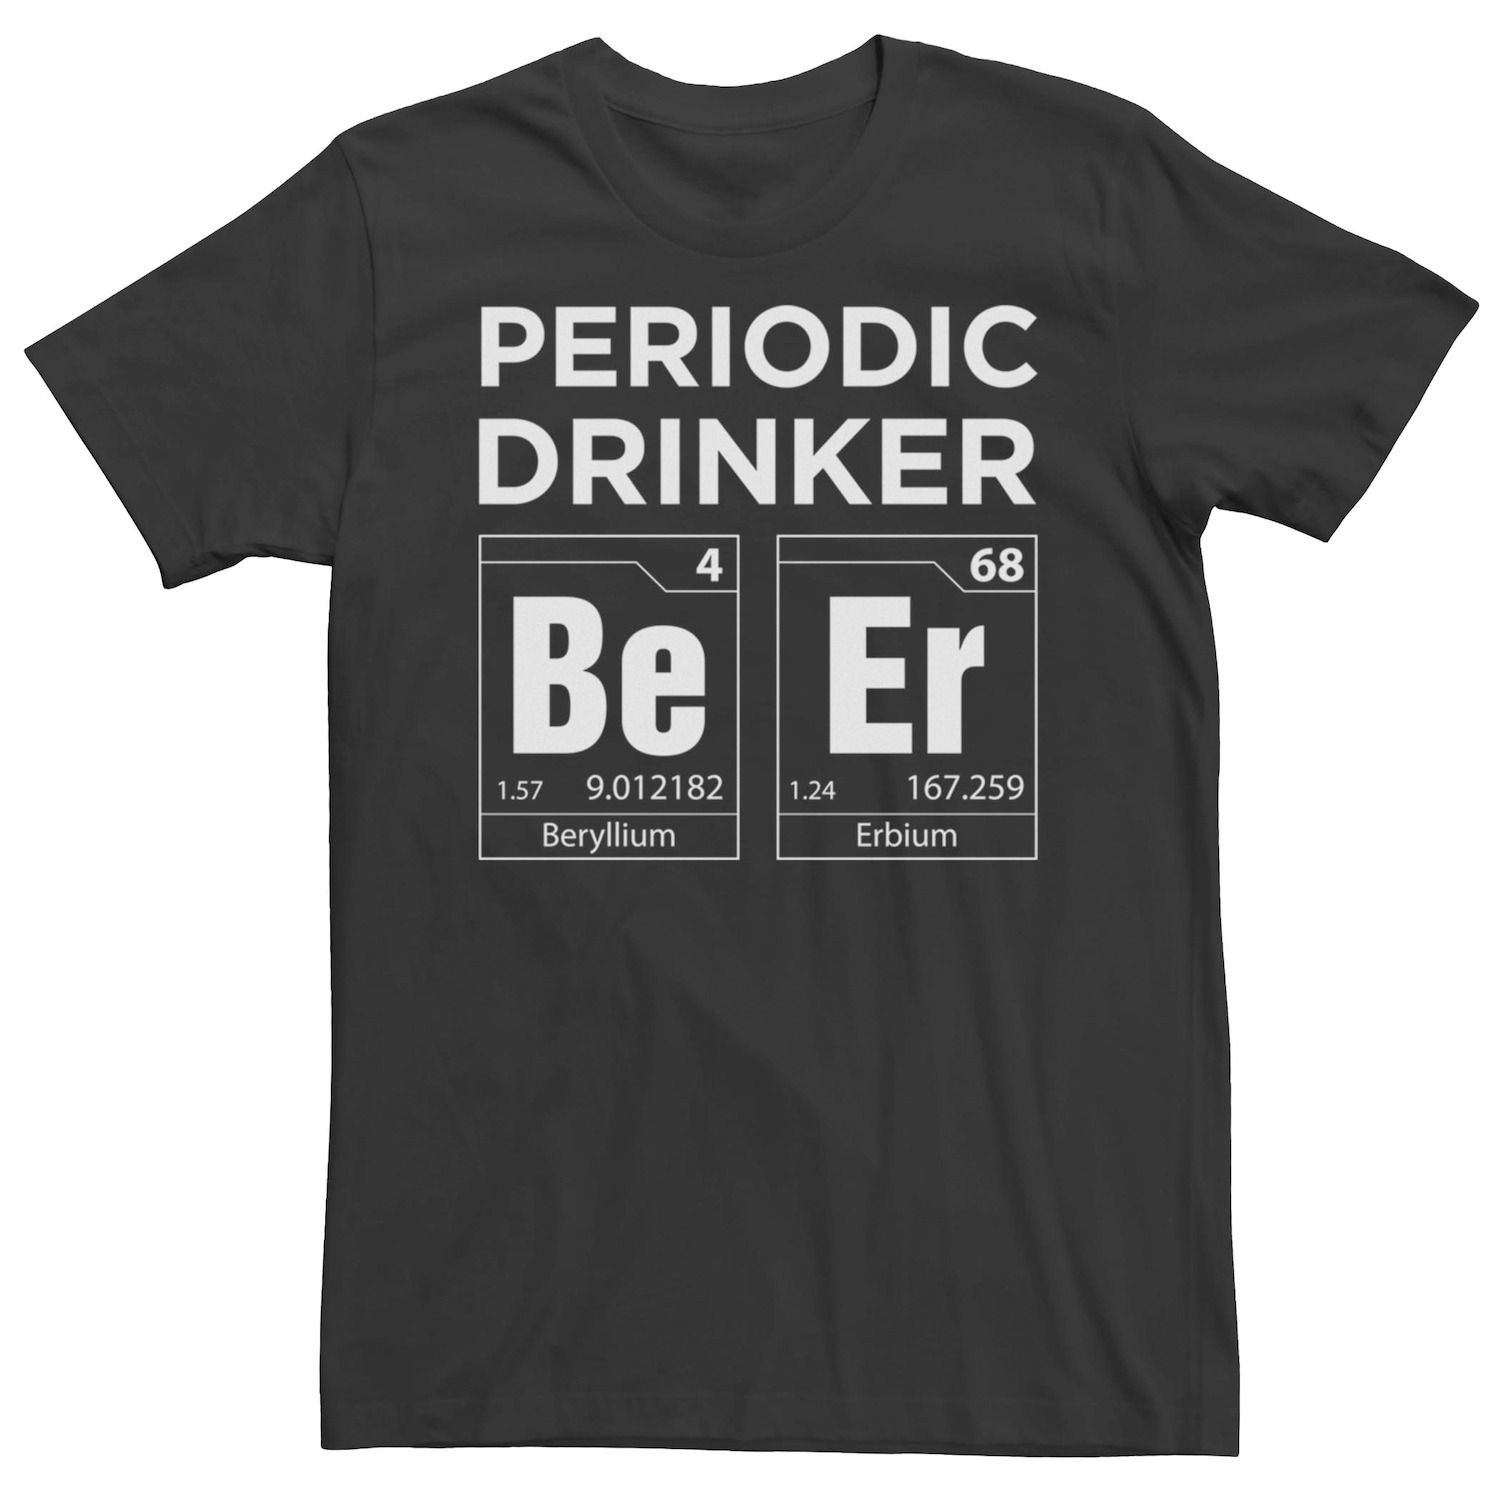 Мужская футболка для периодического питья Licensed Character